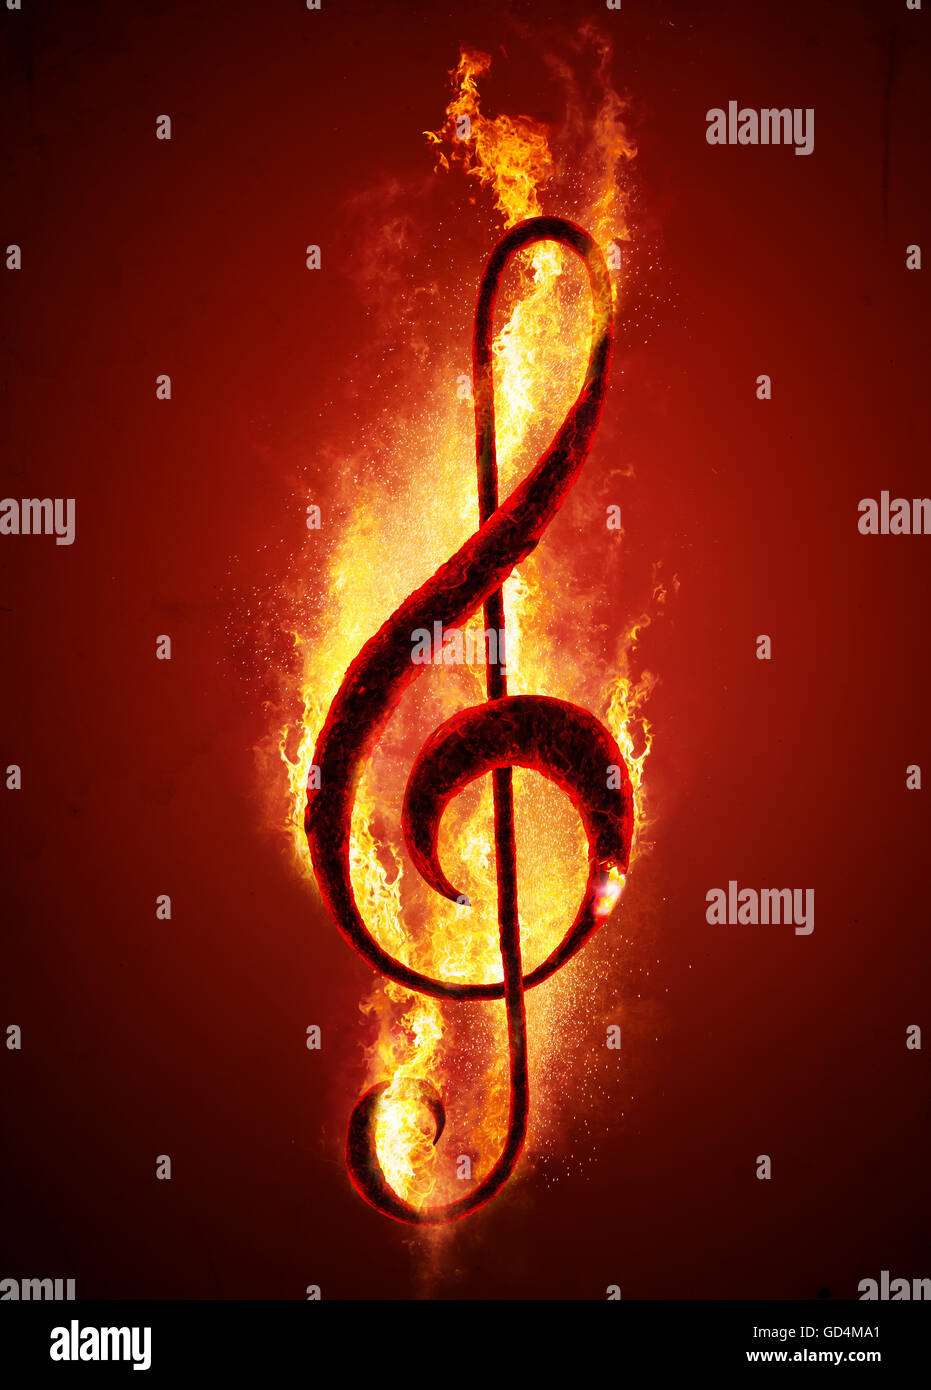 Nota musical (treble clef) de el carbón de leña caliente en el fuego. Imagen conceptual de música caliente. Foto de stock